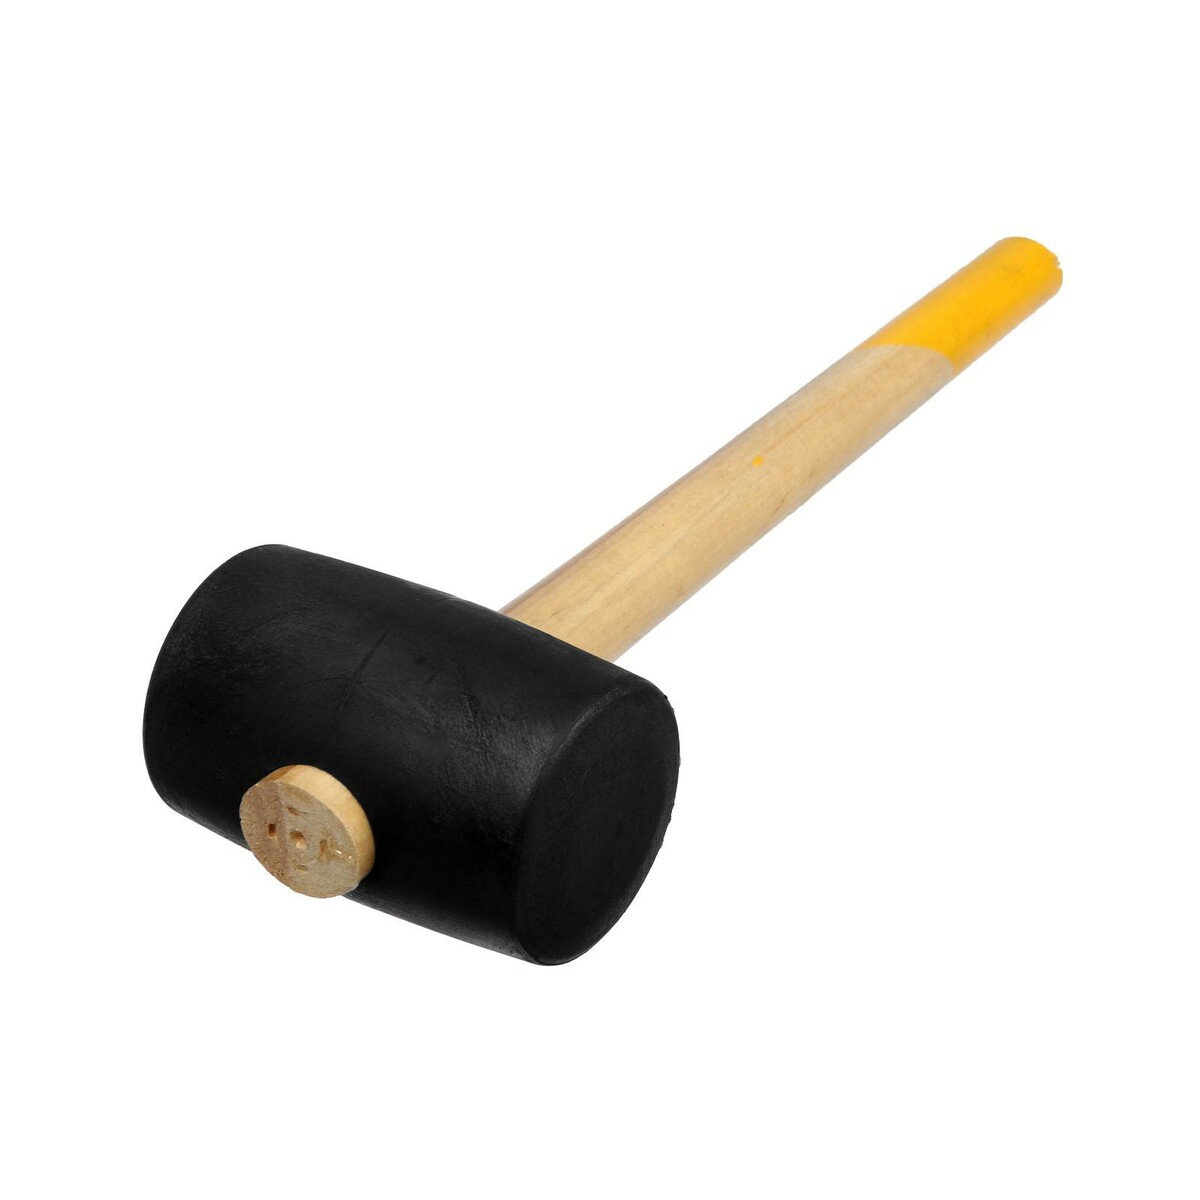 Киянка тундра, деревянная рукоятка, черная резина, 65 мм, 680 г киянка тундра деревянная рукоятка черная резина 50 мм 340 г